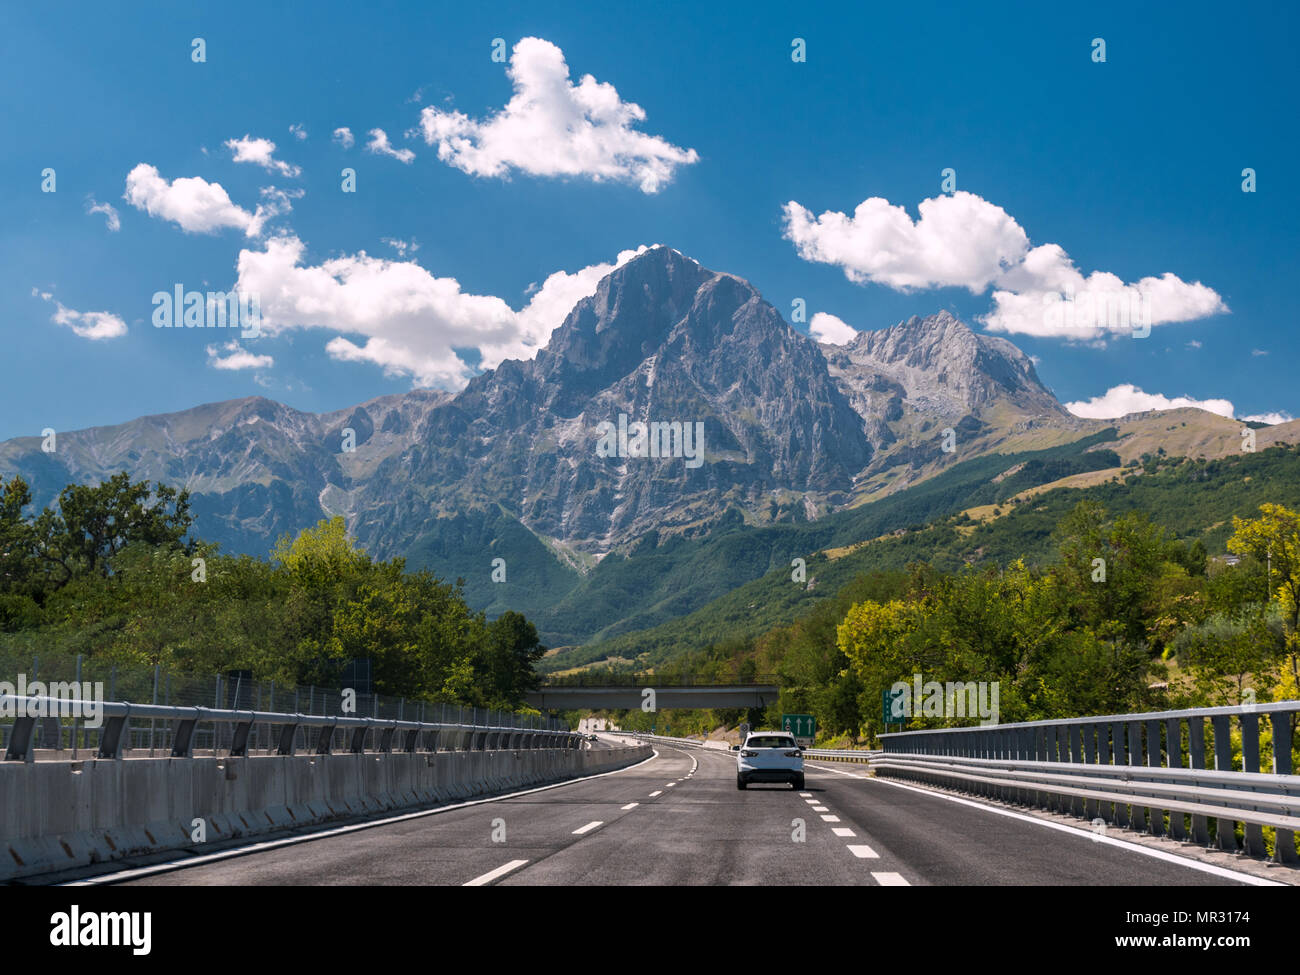 Eine Autobahn In Italien Die Berge Gran Sasso Im Hintergrund Stockfotografie Alamy